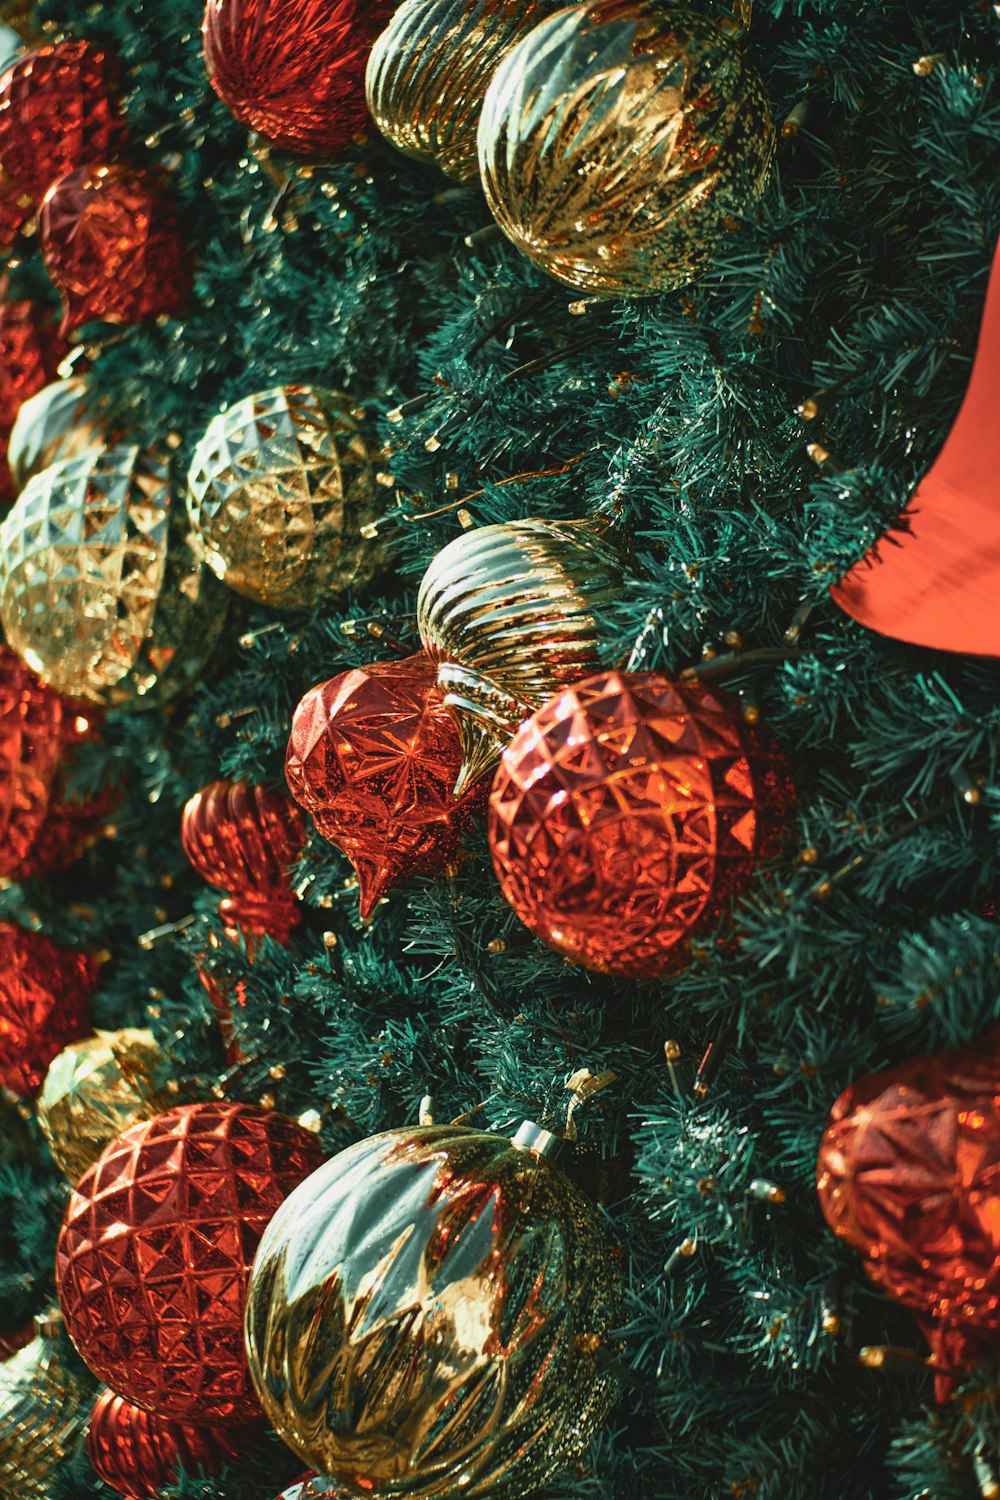 Rote und silberne Kugeln am grünen Weihnachtsbaum